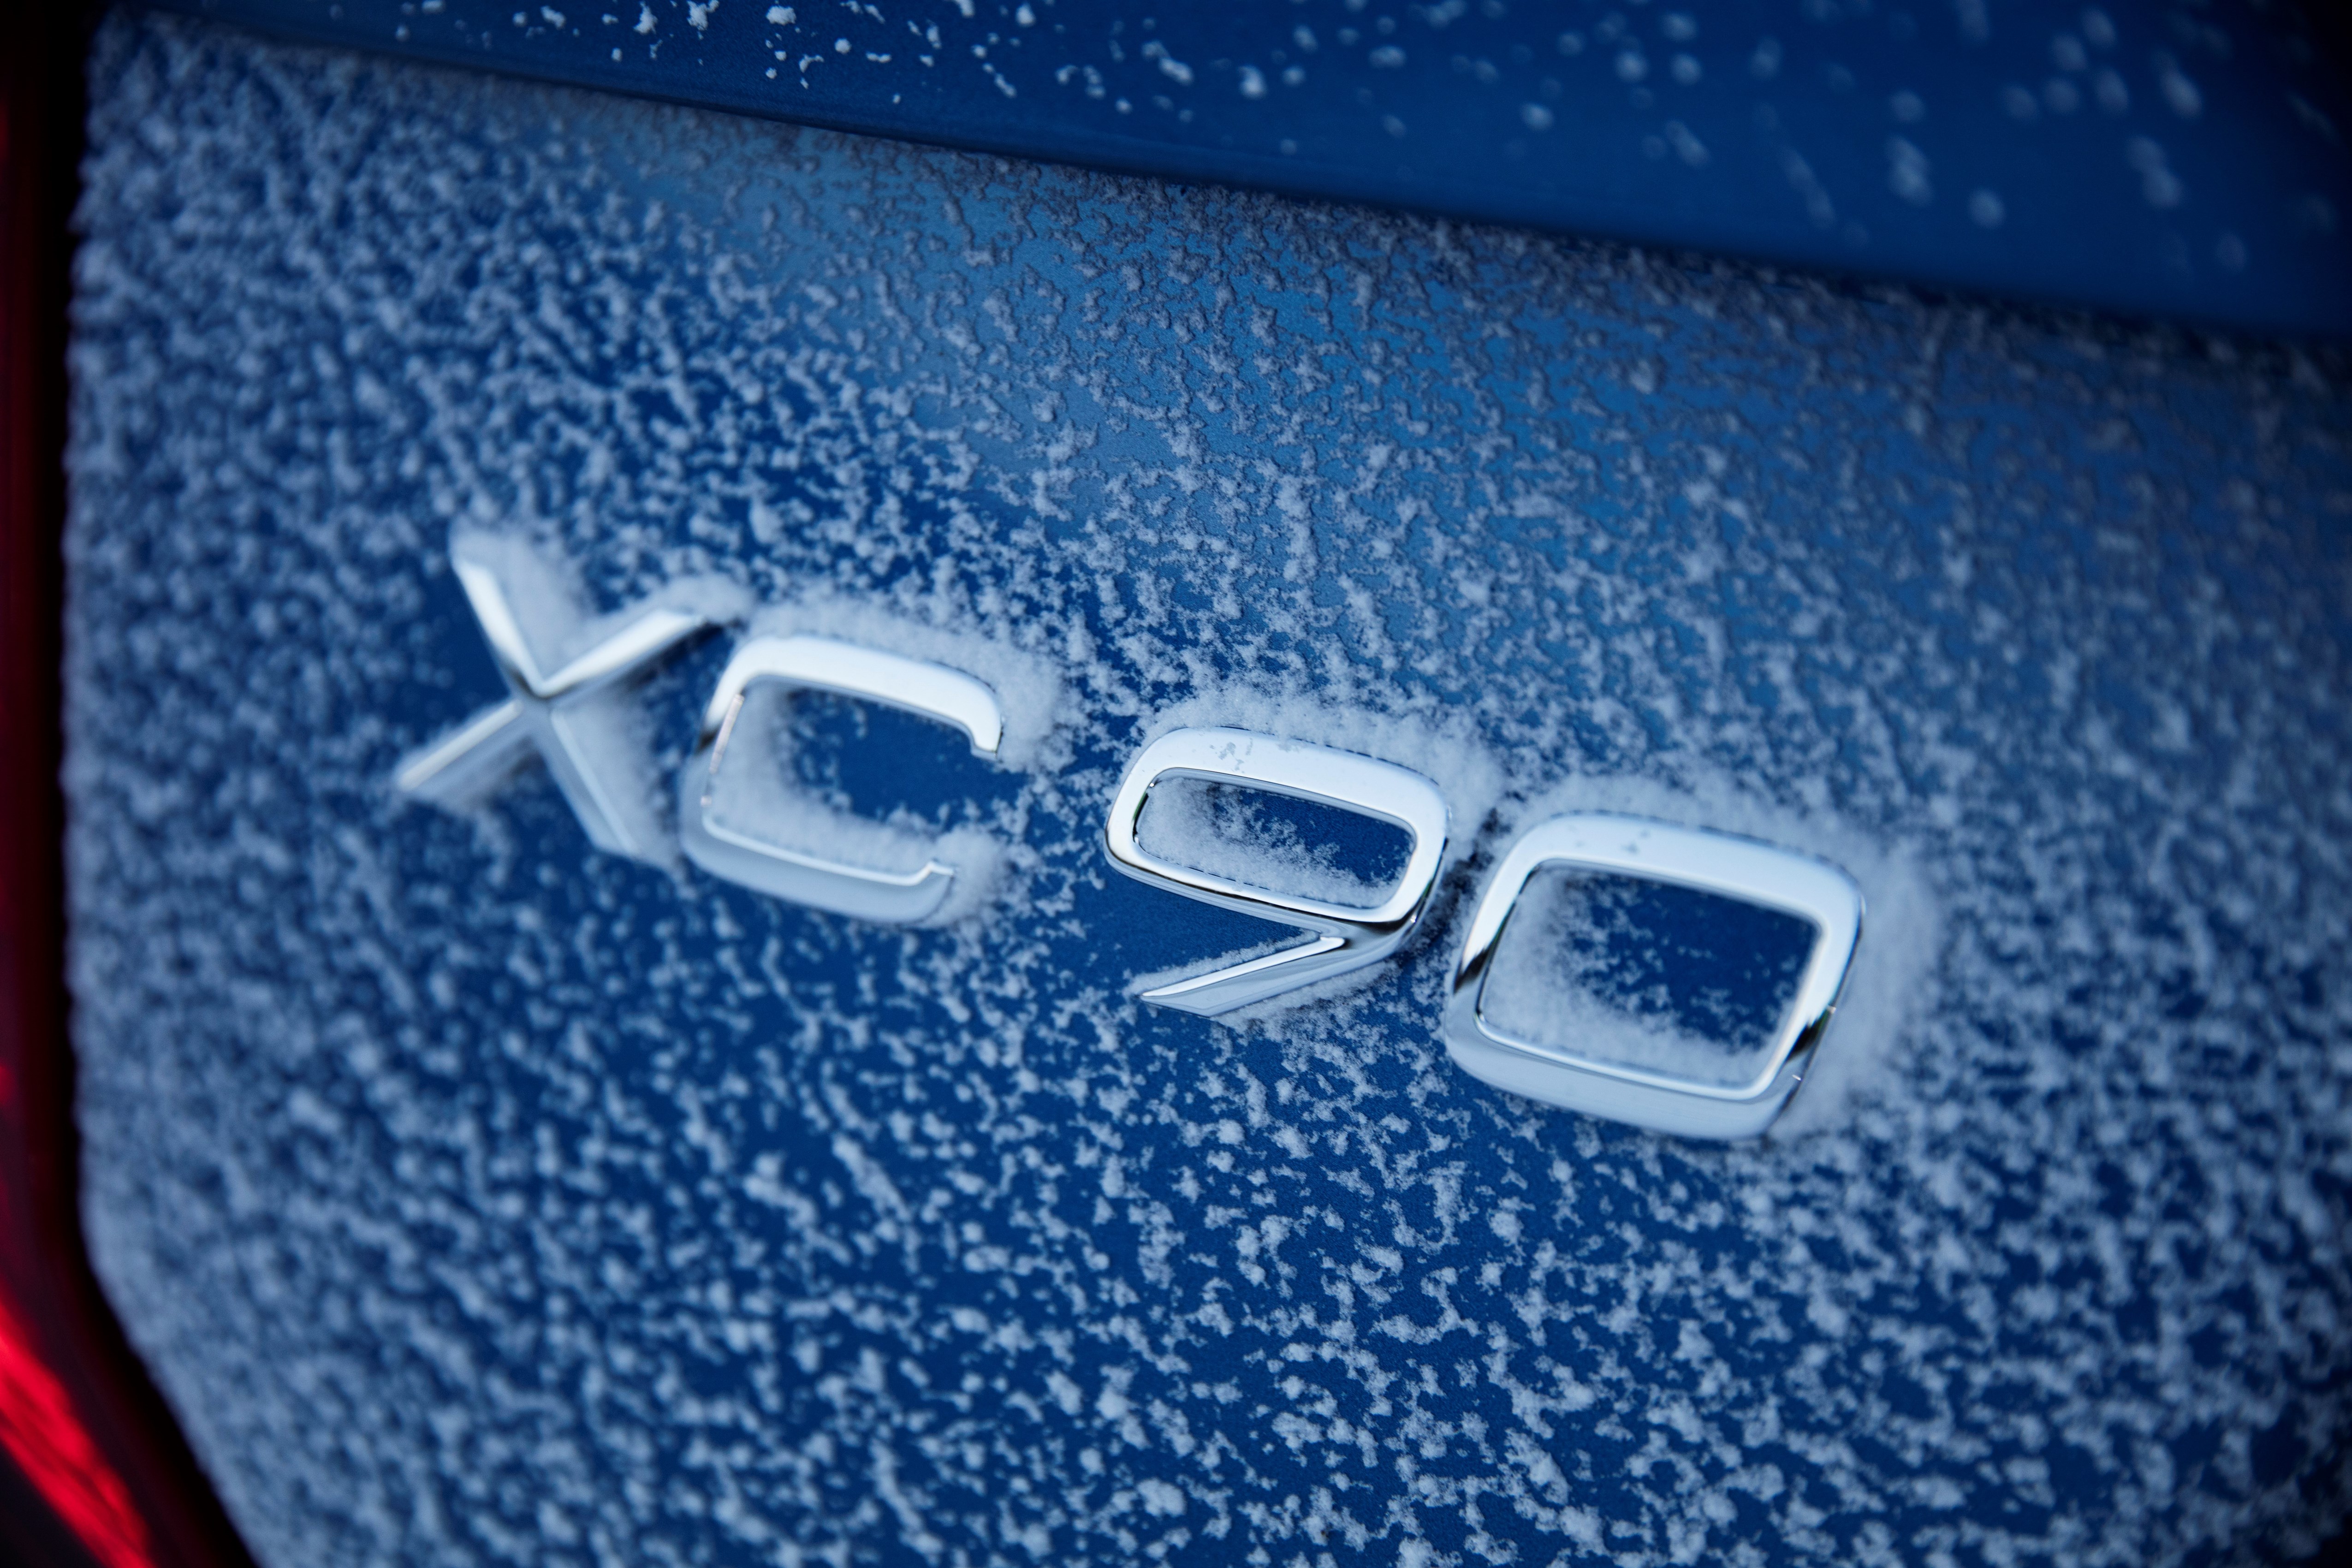 Volvo чества юбилей с тест-драйв върху сняг и лед